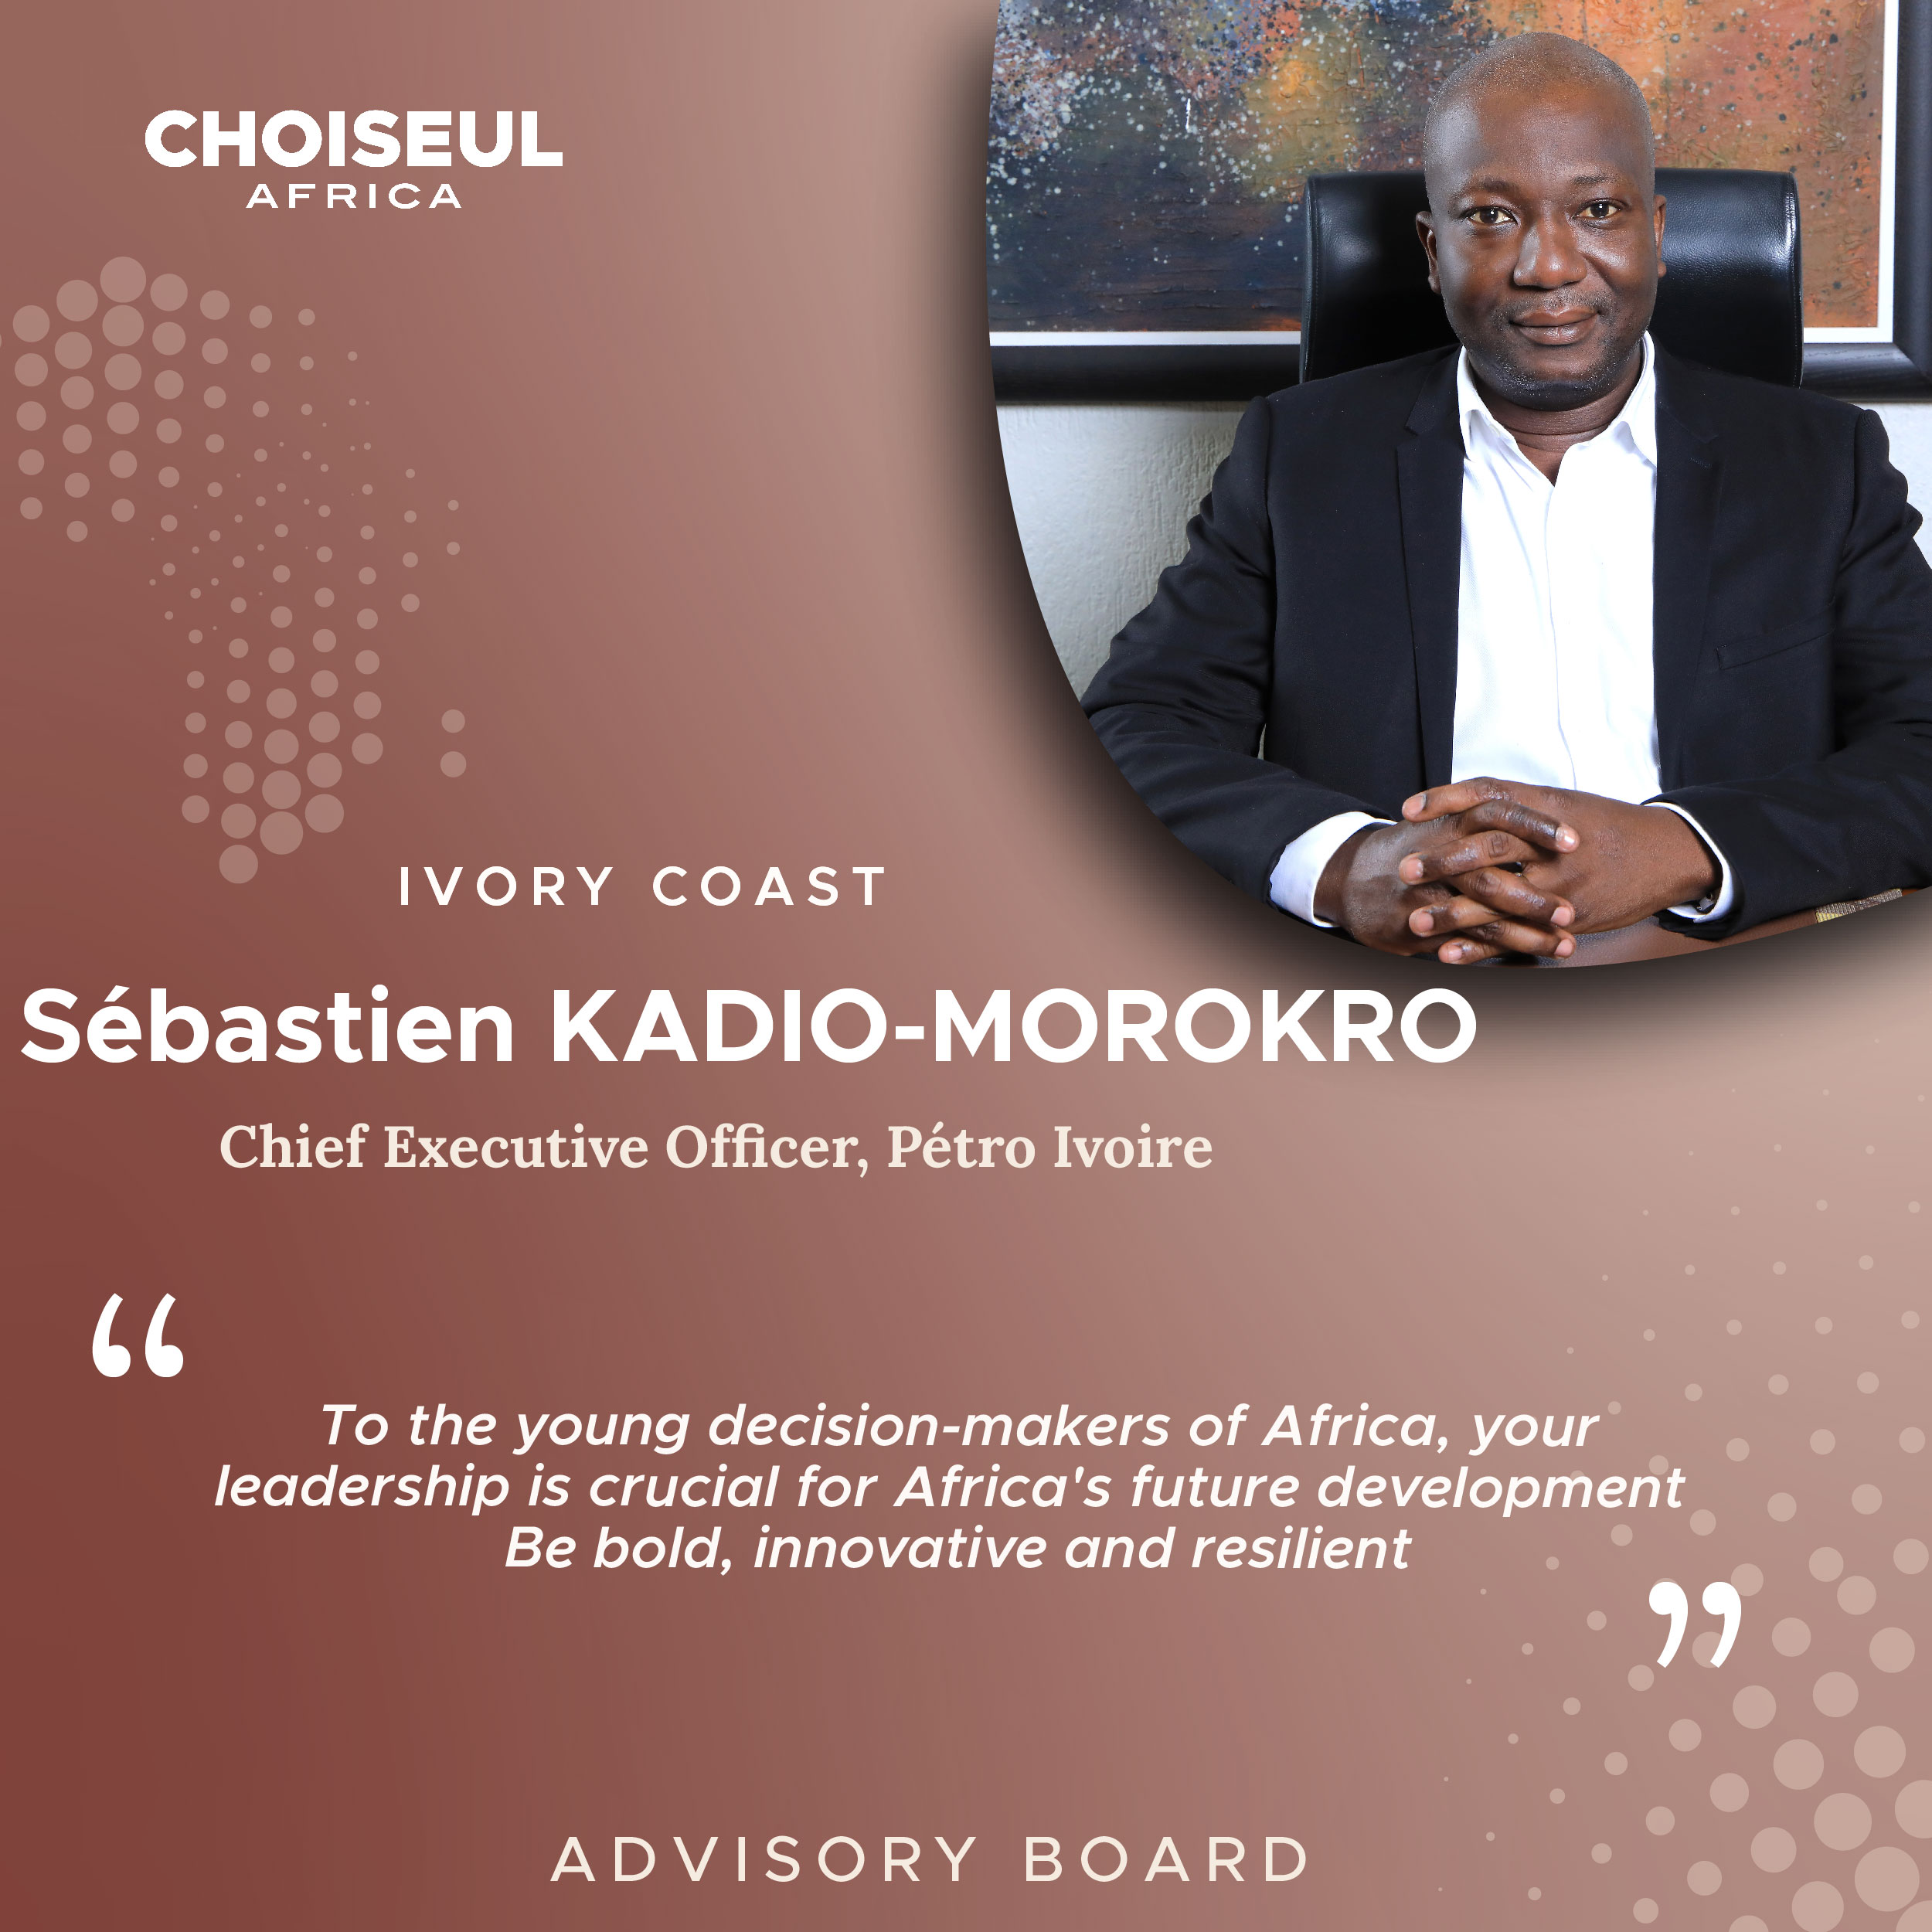 Advisory Board Portrait : Sébastien Kadio-Morokro